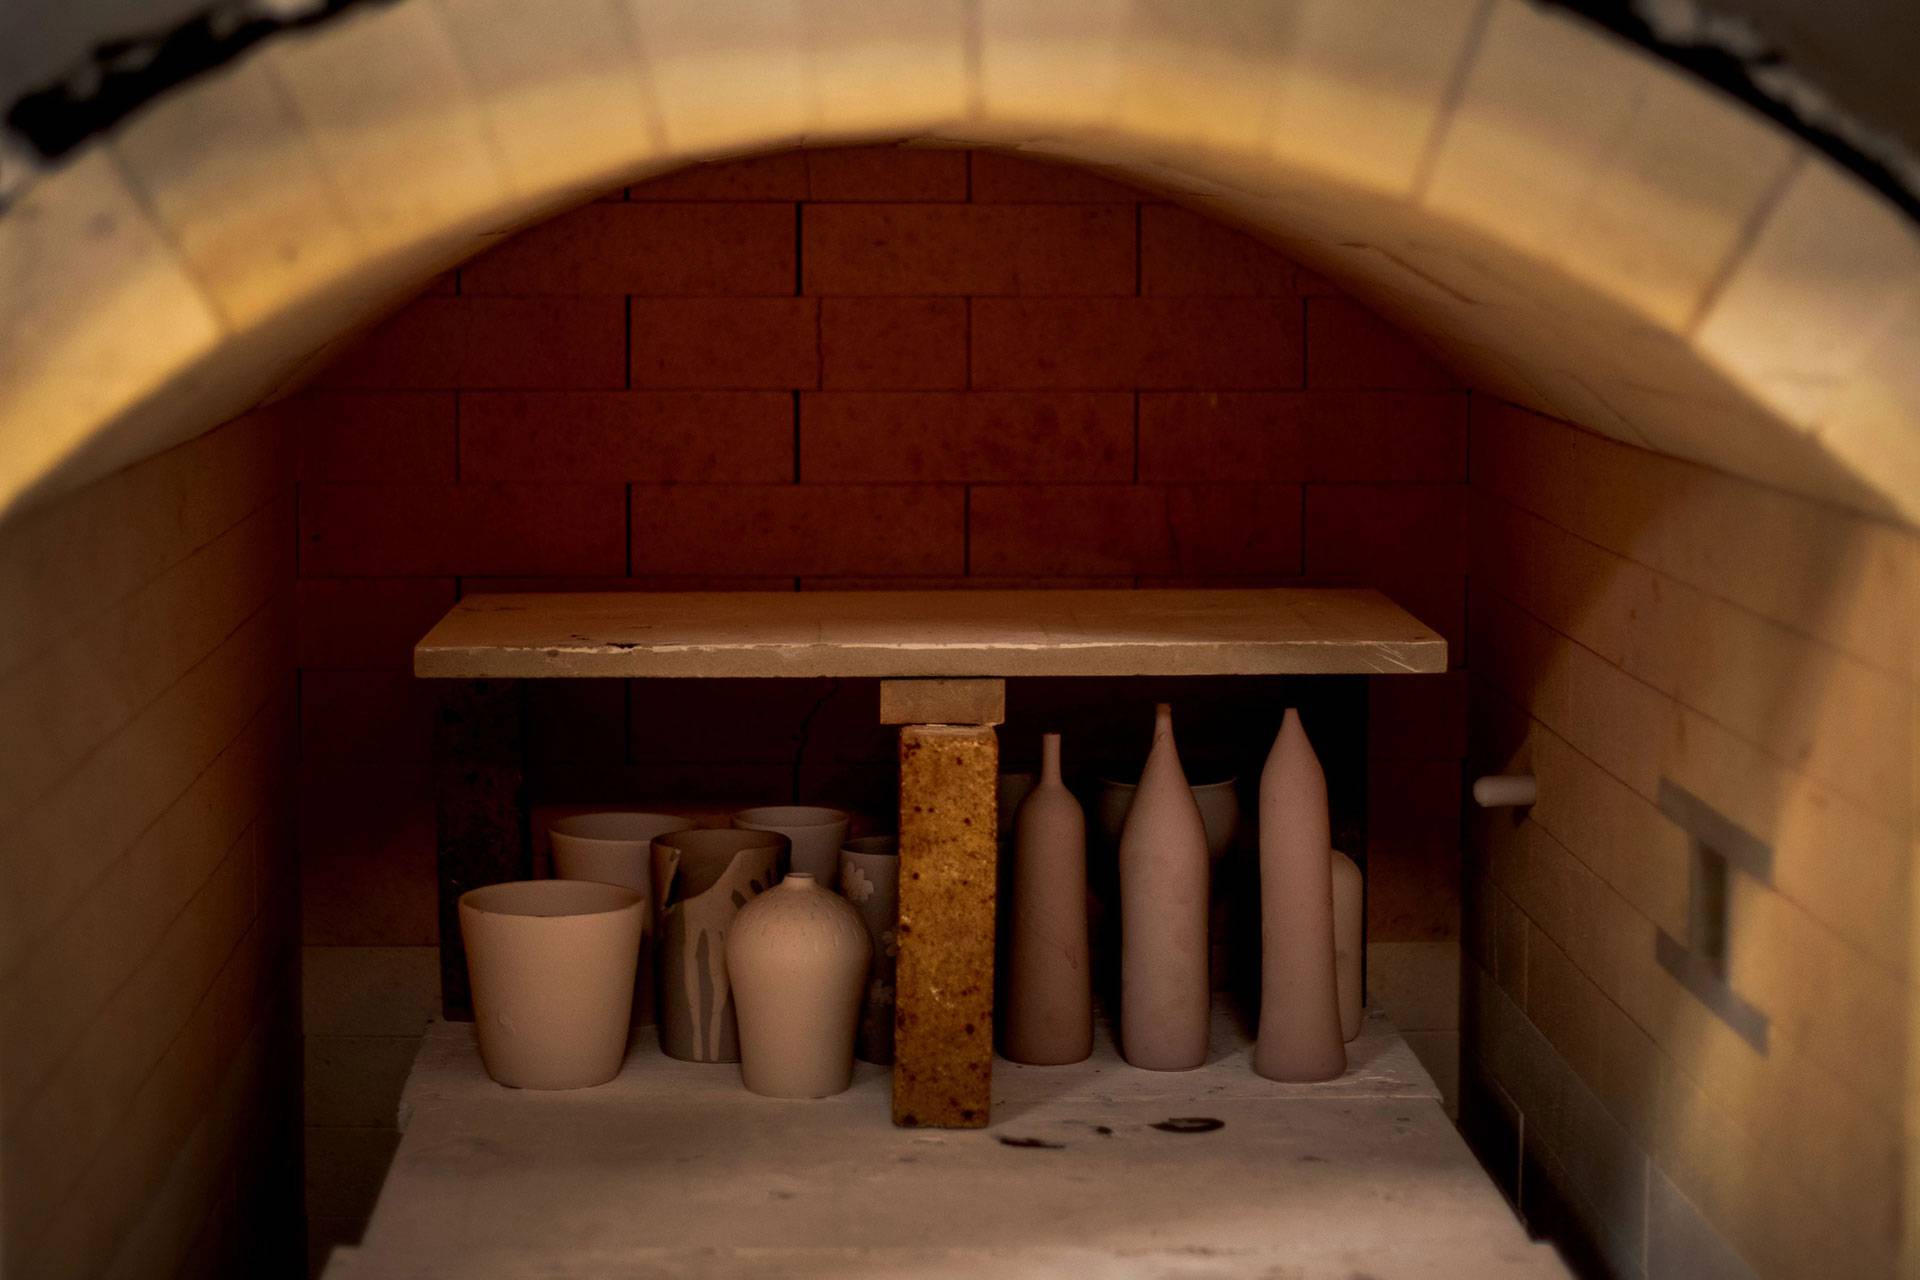 Ceramic works inside the kiln